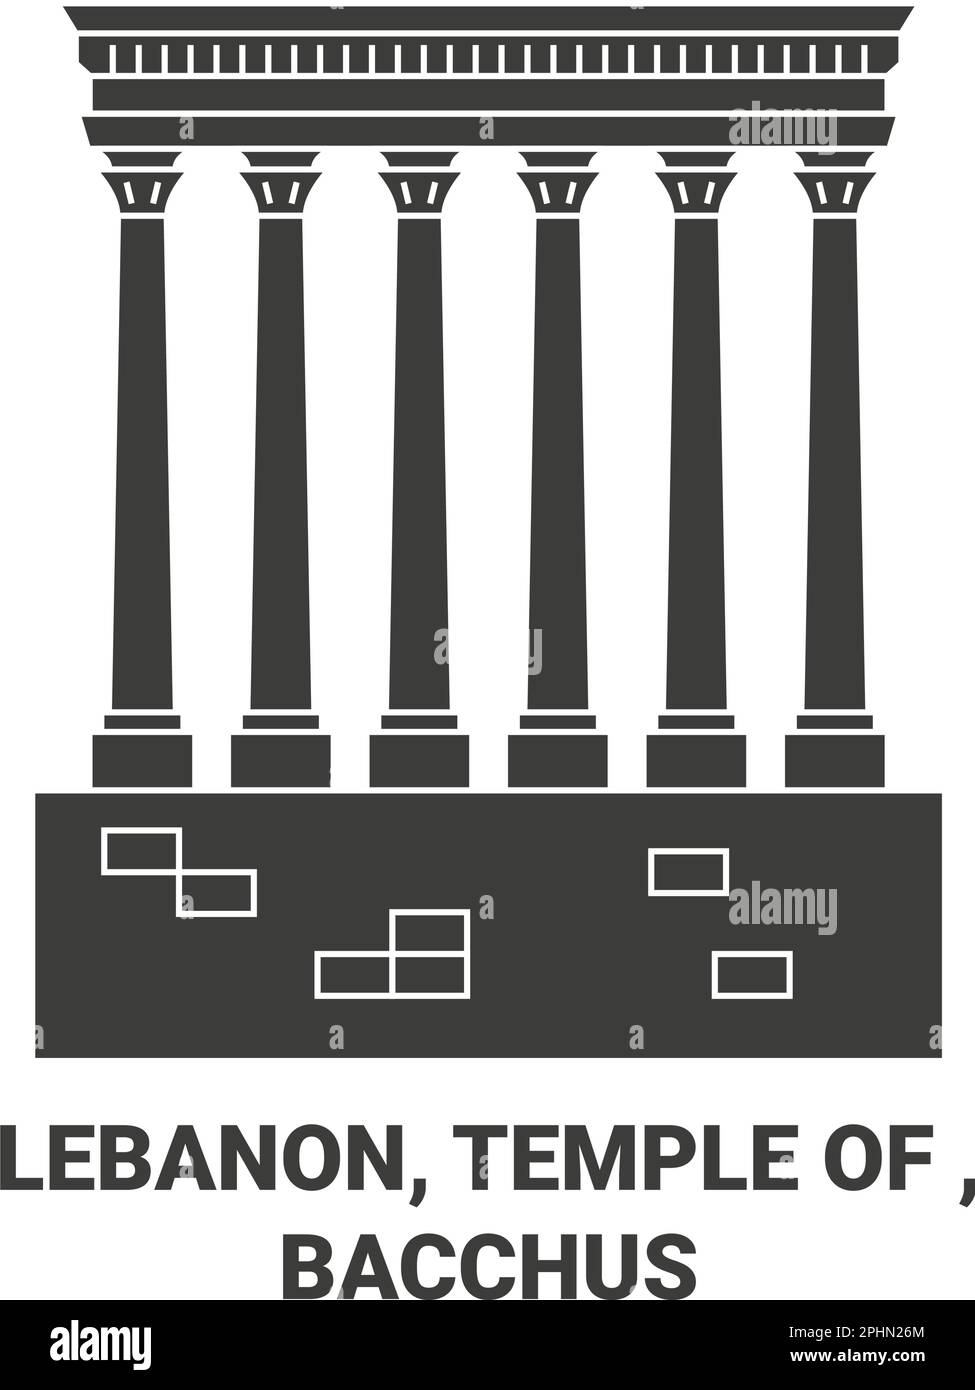 Liban, Temple de , illustration vectorielle de voyage de Bacchus Illustration de Vecteur